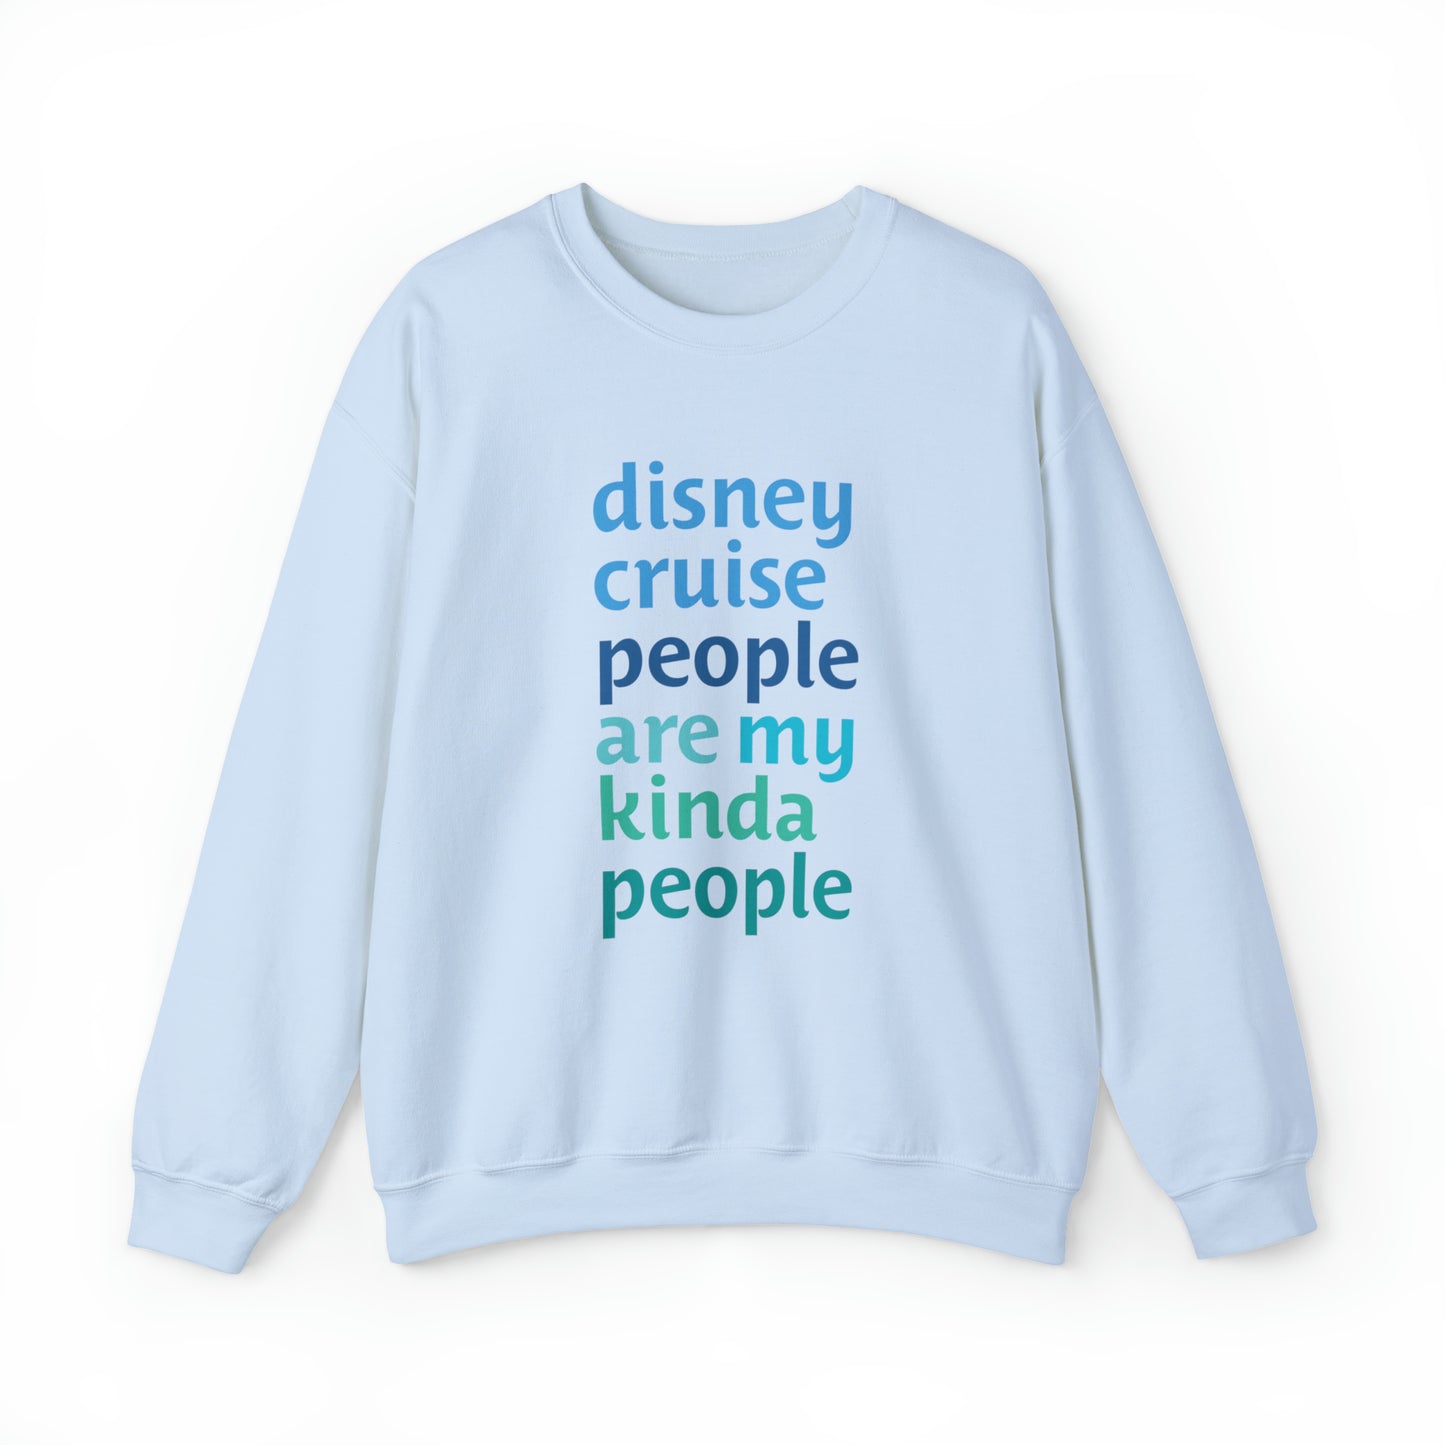 Disney People Are My Kinda People - Adult Crewneck Sweatshirt